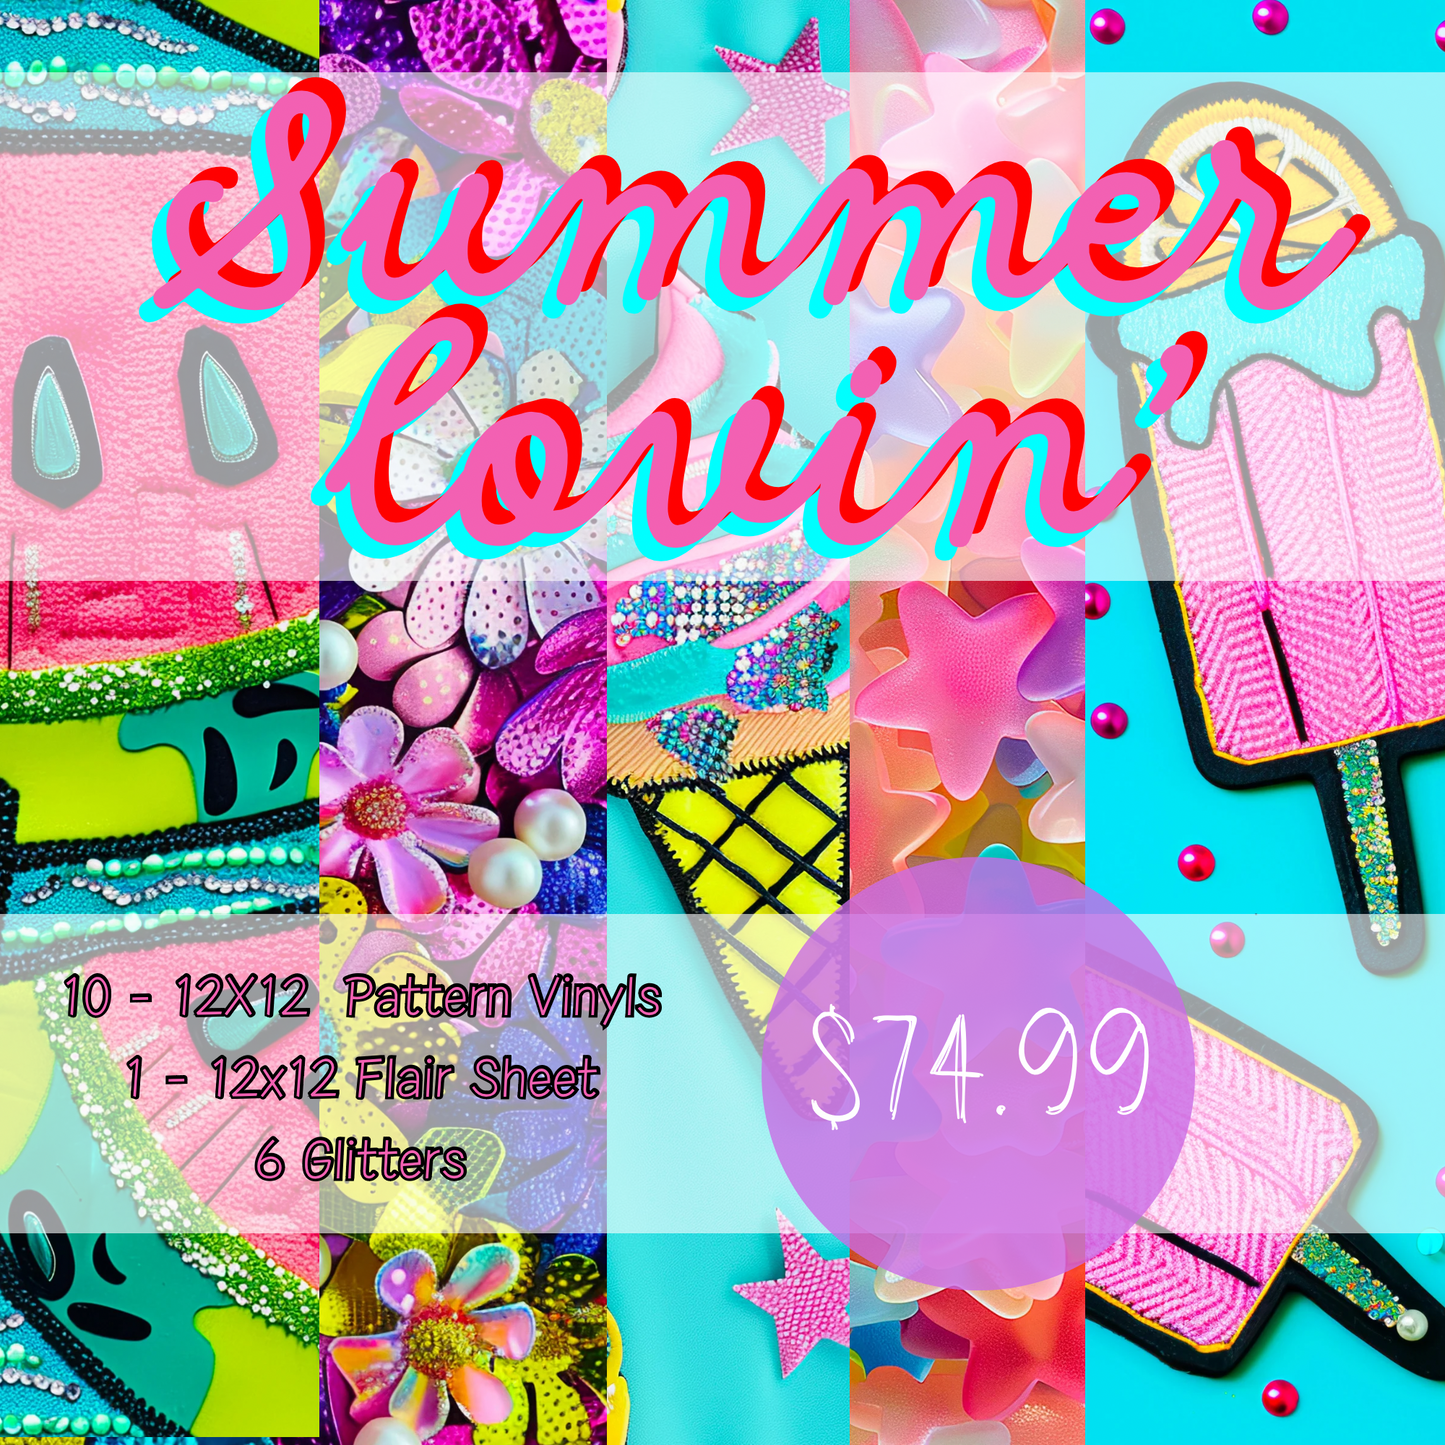 Summer Lovin’ - June Preorder (no codes)